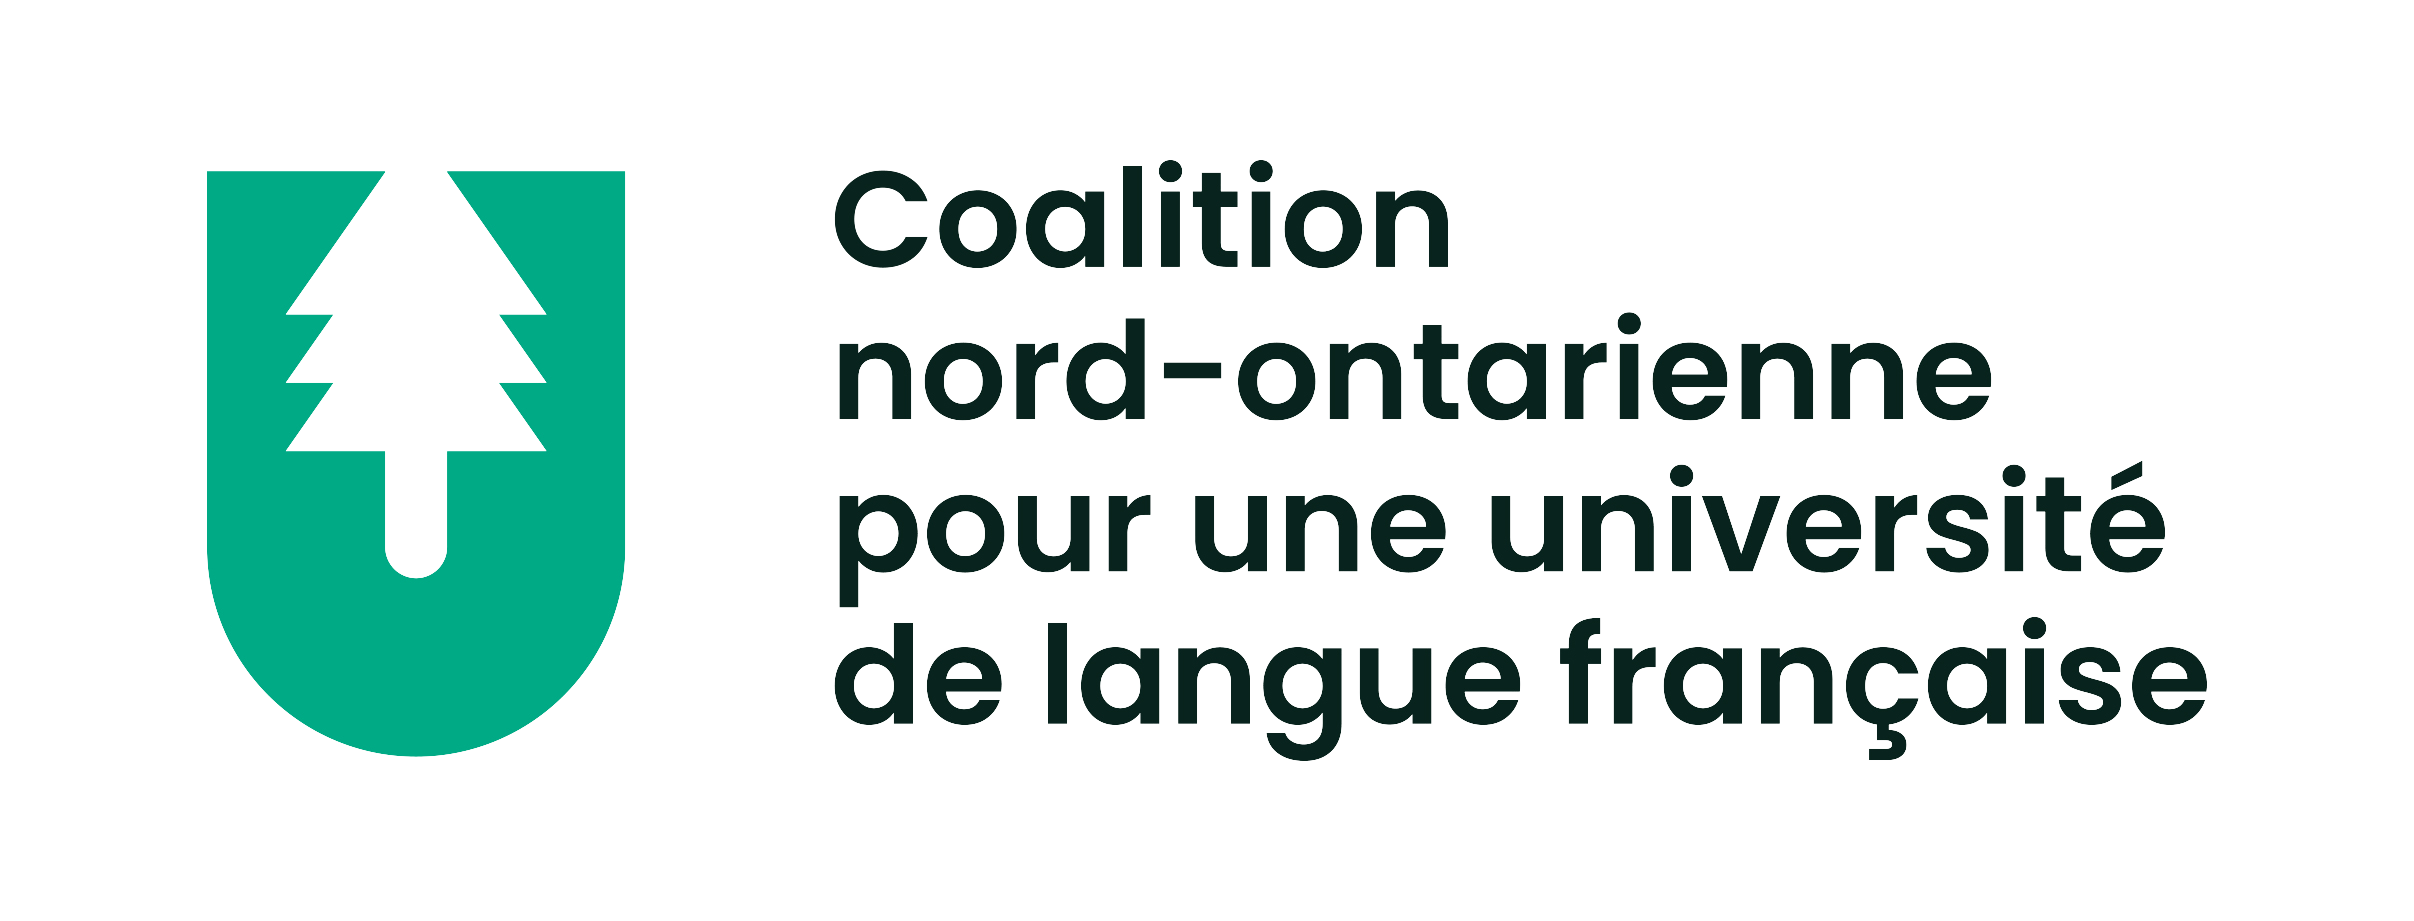 La Coalition nord-ontarienne pour une université francophone